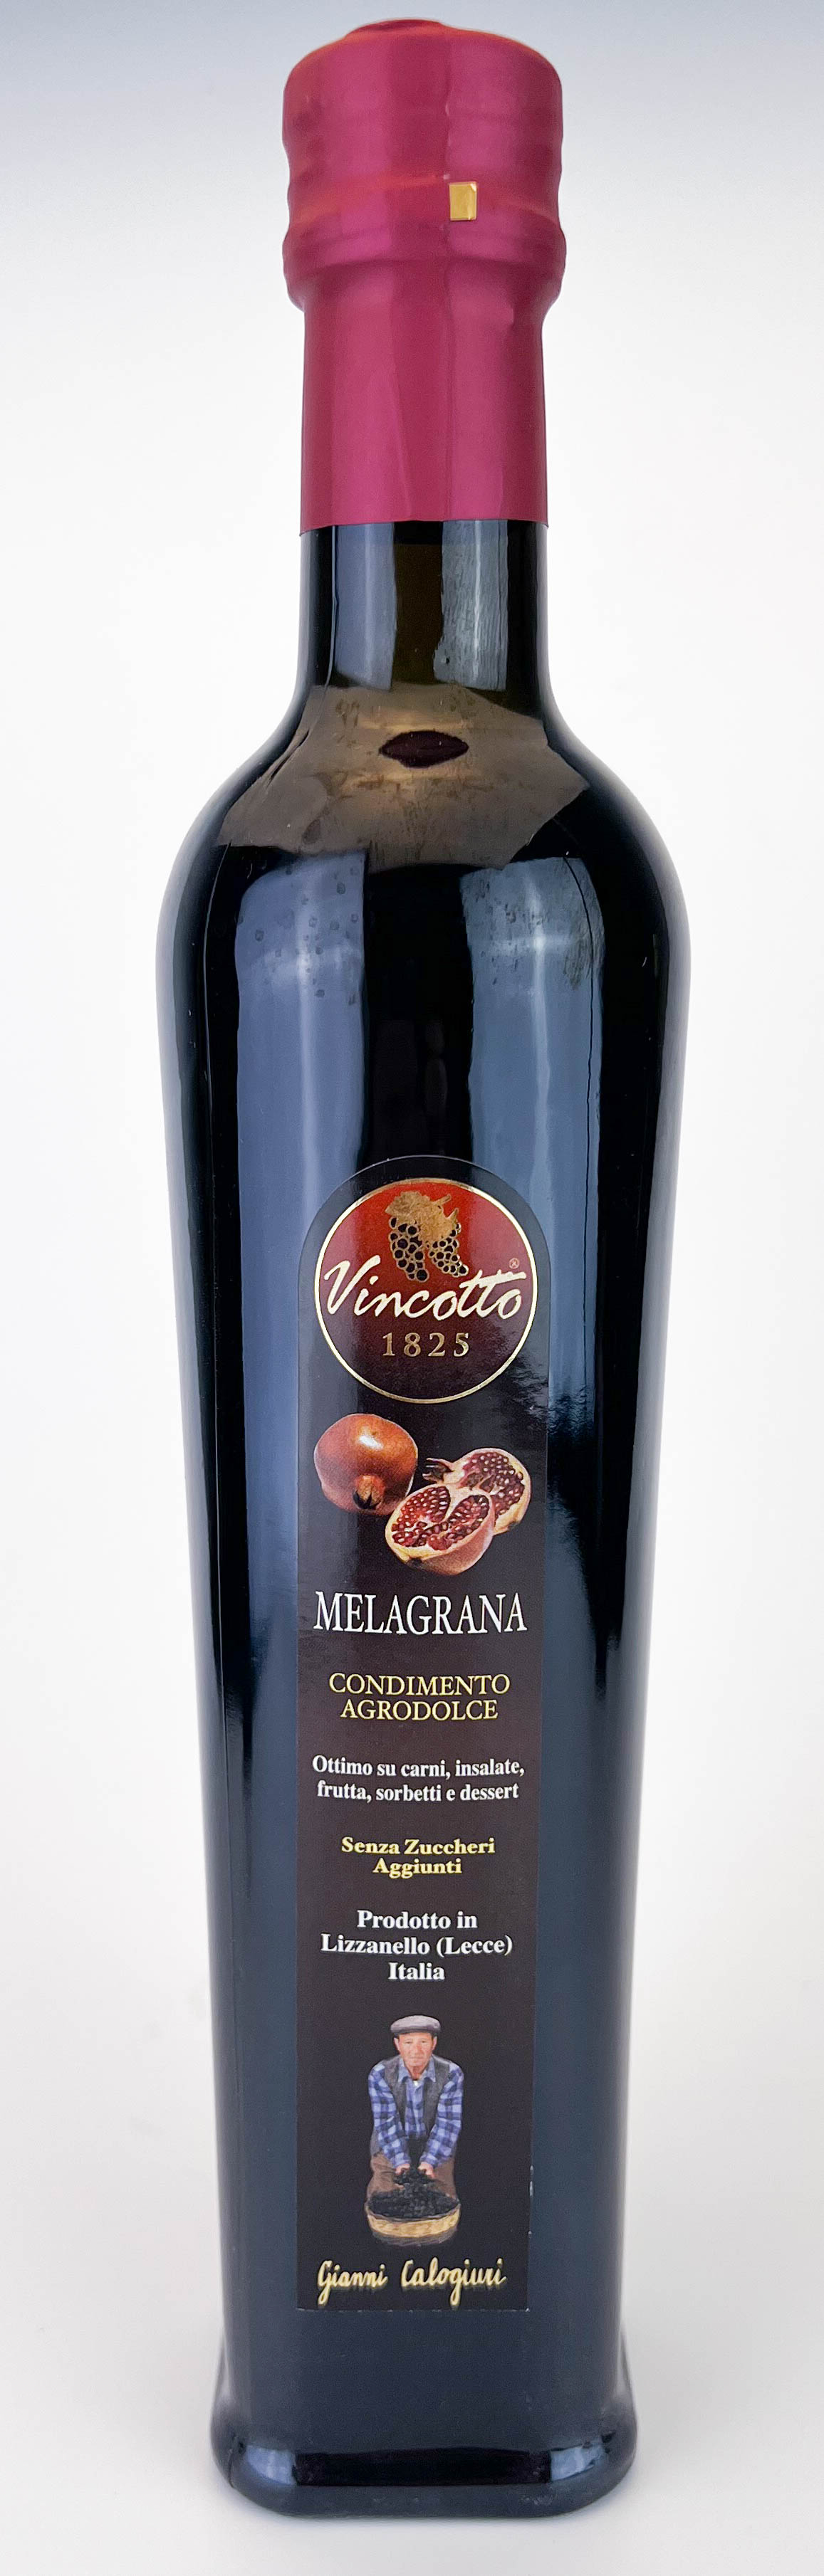 Vincotto con Melagrana (Melograno) bottiglia da 500 ml